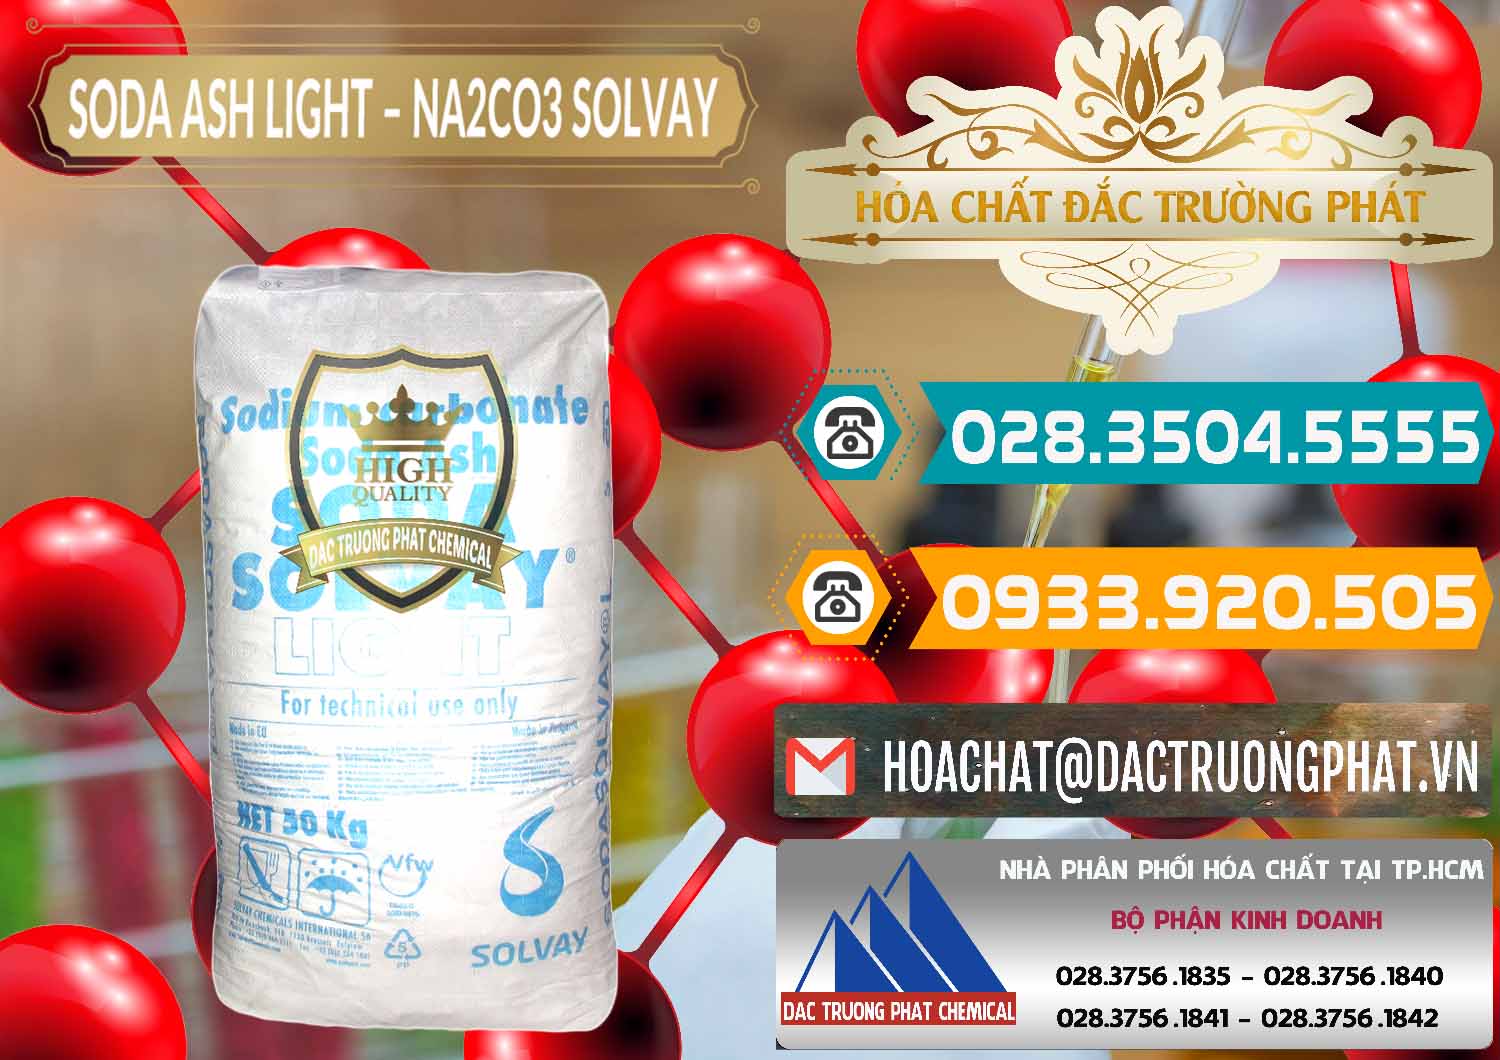 Cty chuyên bán ( cung cấp ) Soda Ash Light - NA2CO3 Solvay Bulgaria - 0126 - Nơi phân phối - kinh doanh hóa chất tại TP.HCM - congtyhoachat.vn